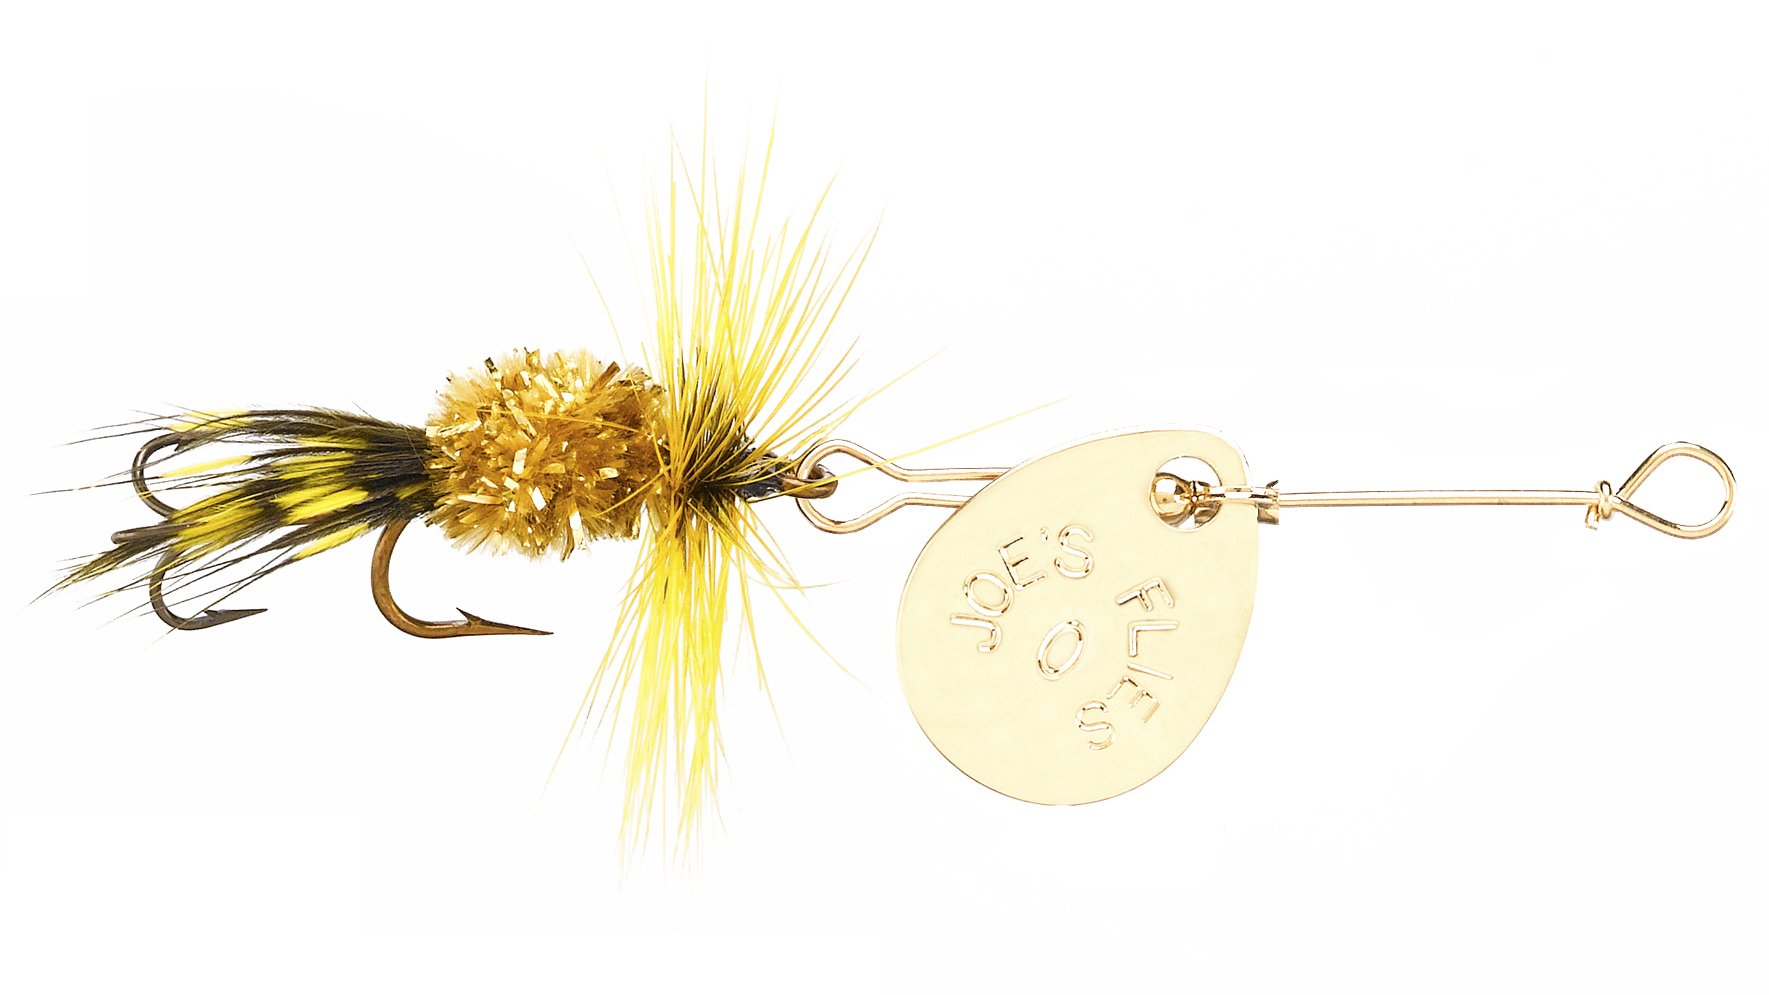 Joe's Flies Speckled Trout Inline Spinner Fly Size 10 – Joe's Flies Inc